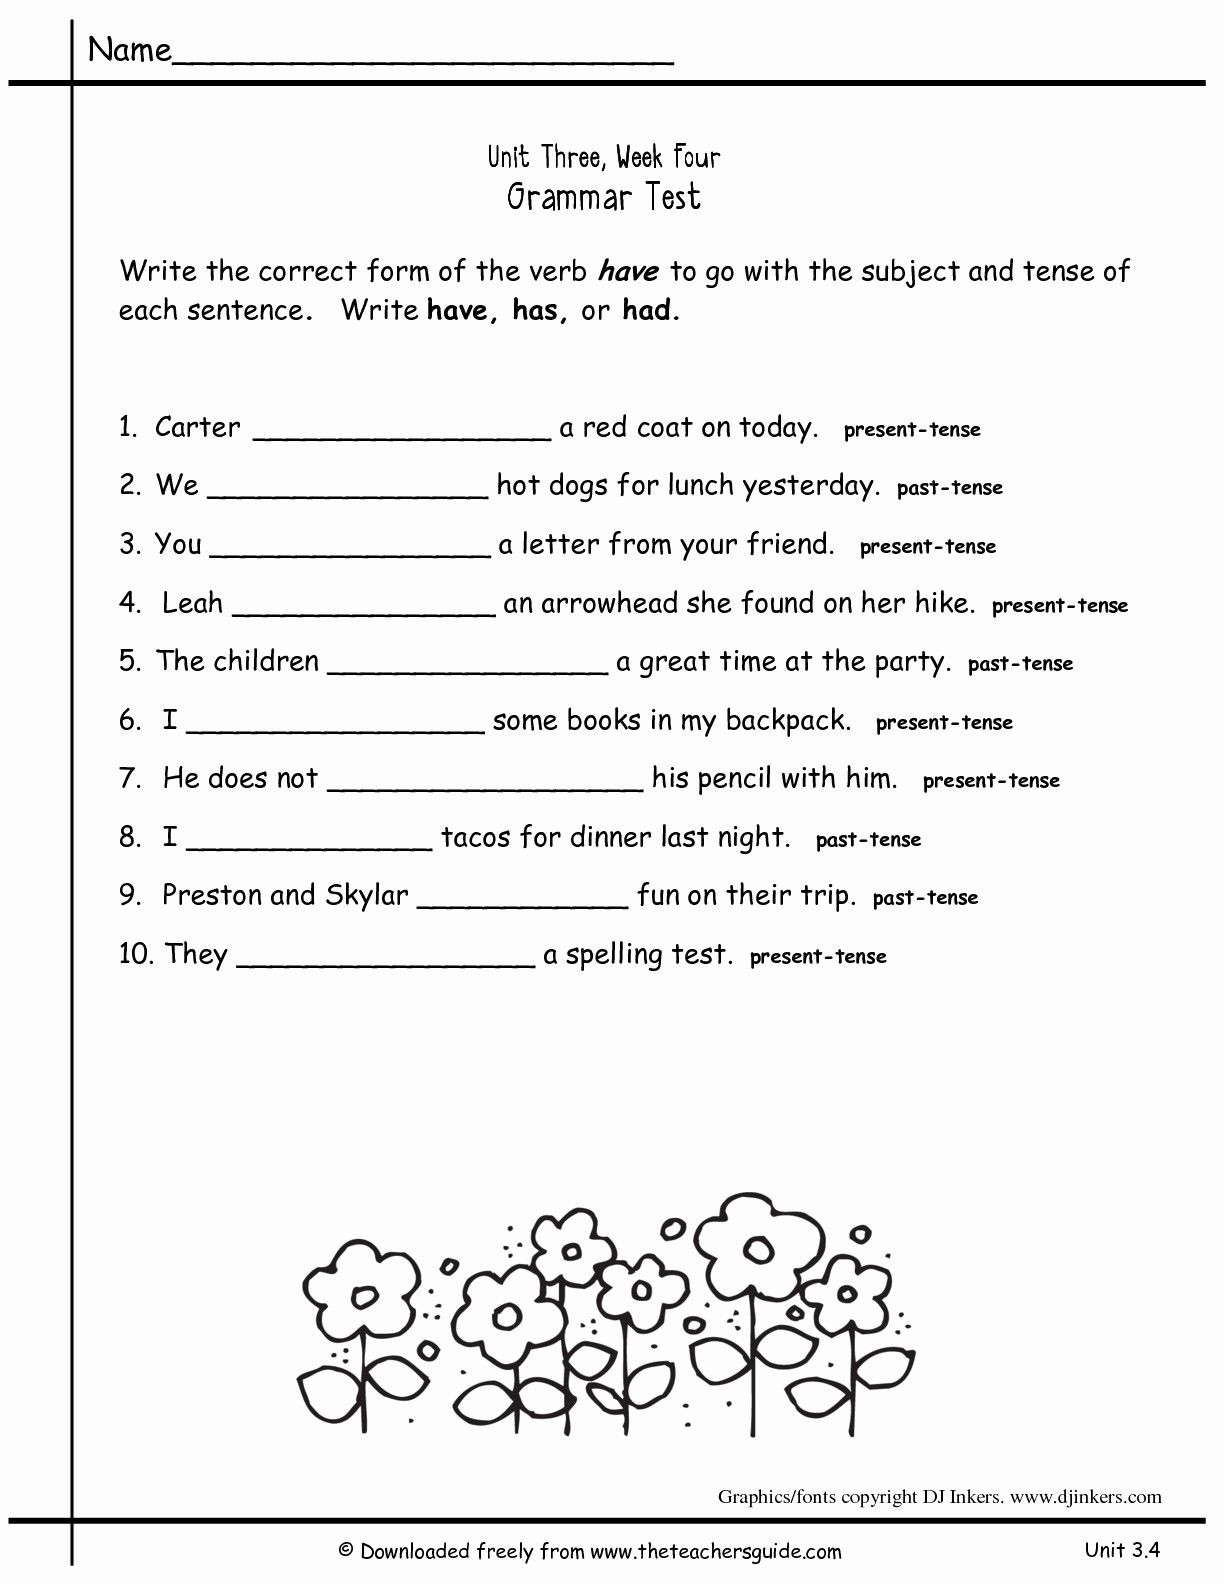 Verb Tense Worksheets 2nd Grade 2nd Grade Grammar Worksheets Pdf New Worksheets for All